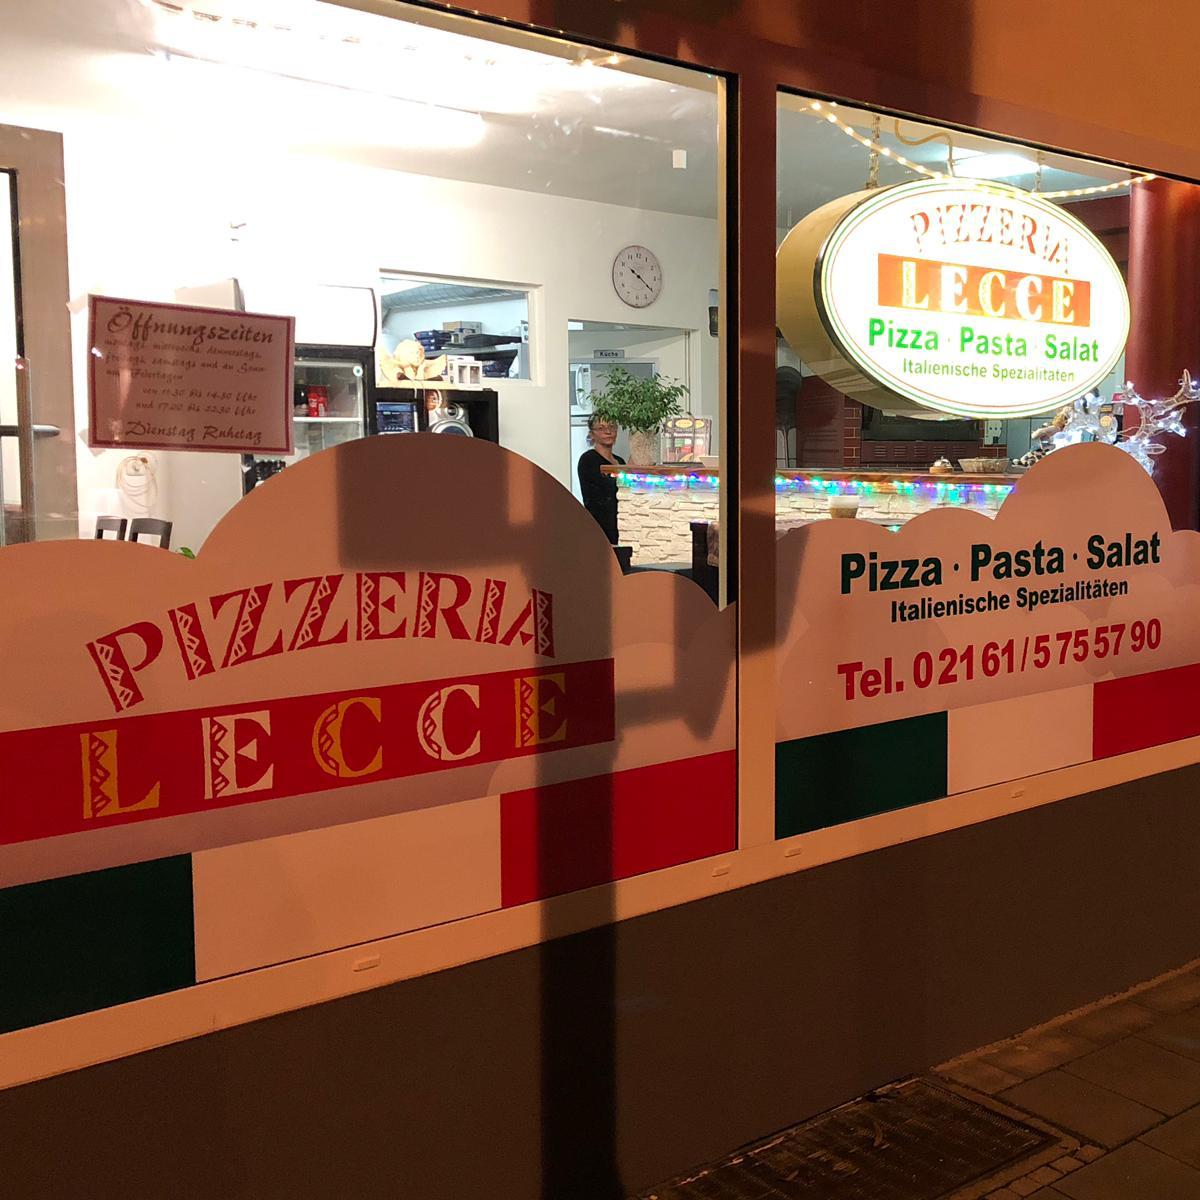 Pizzeria Lecce